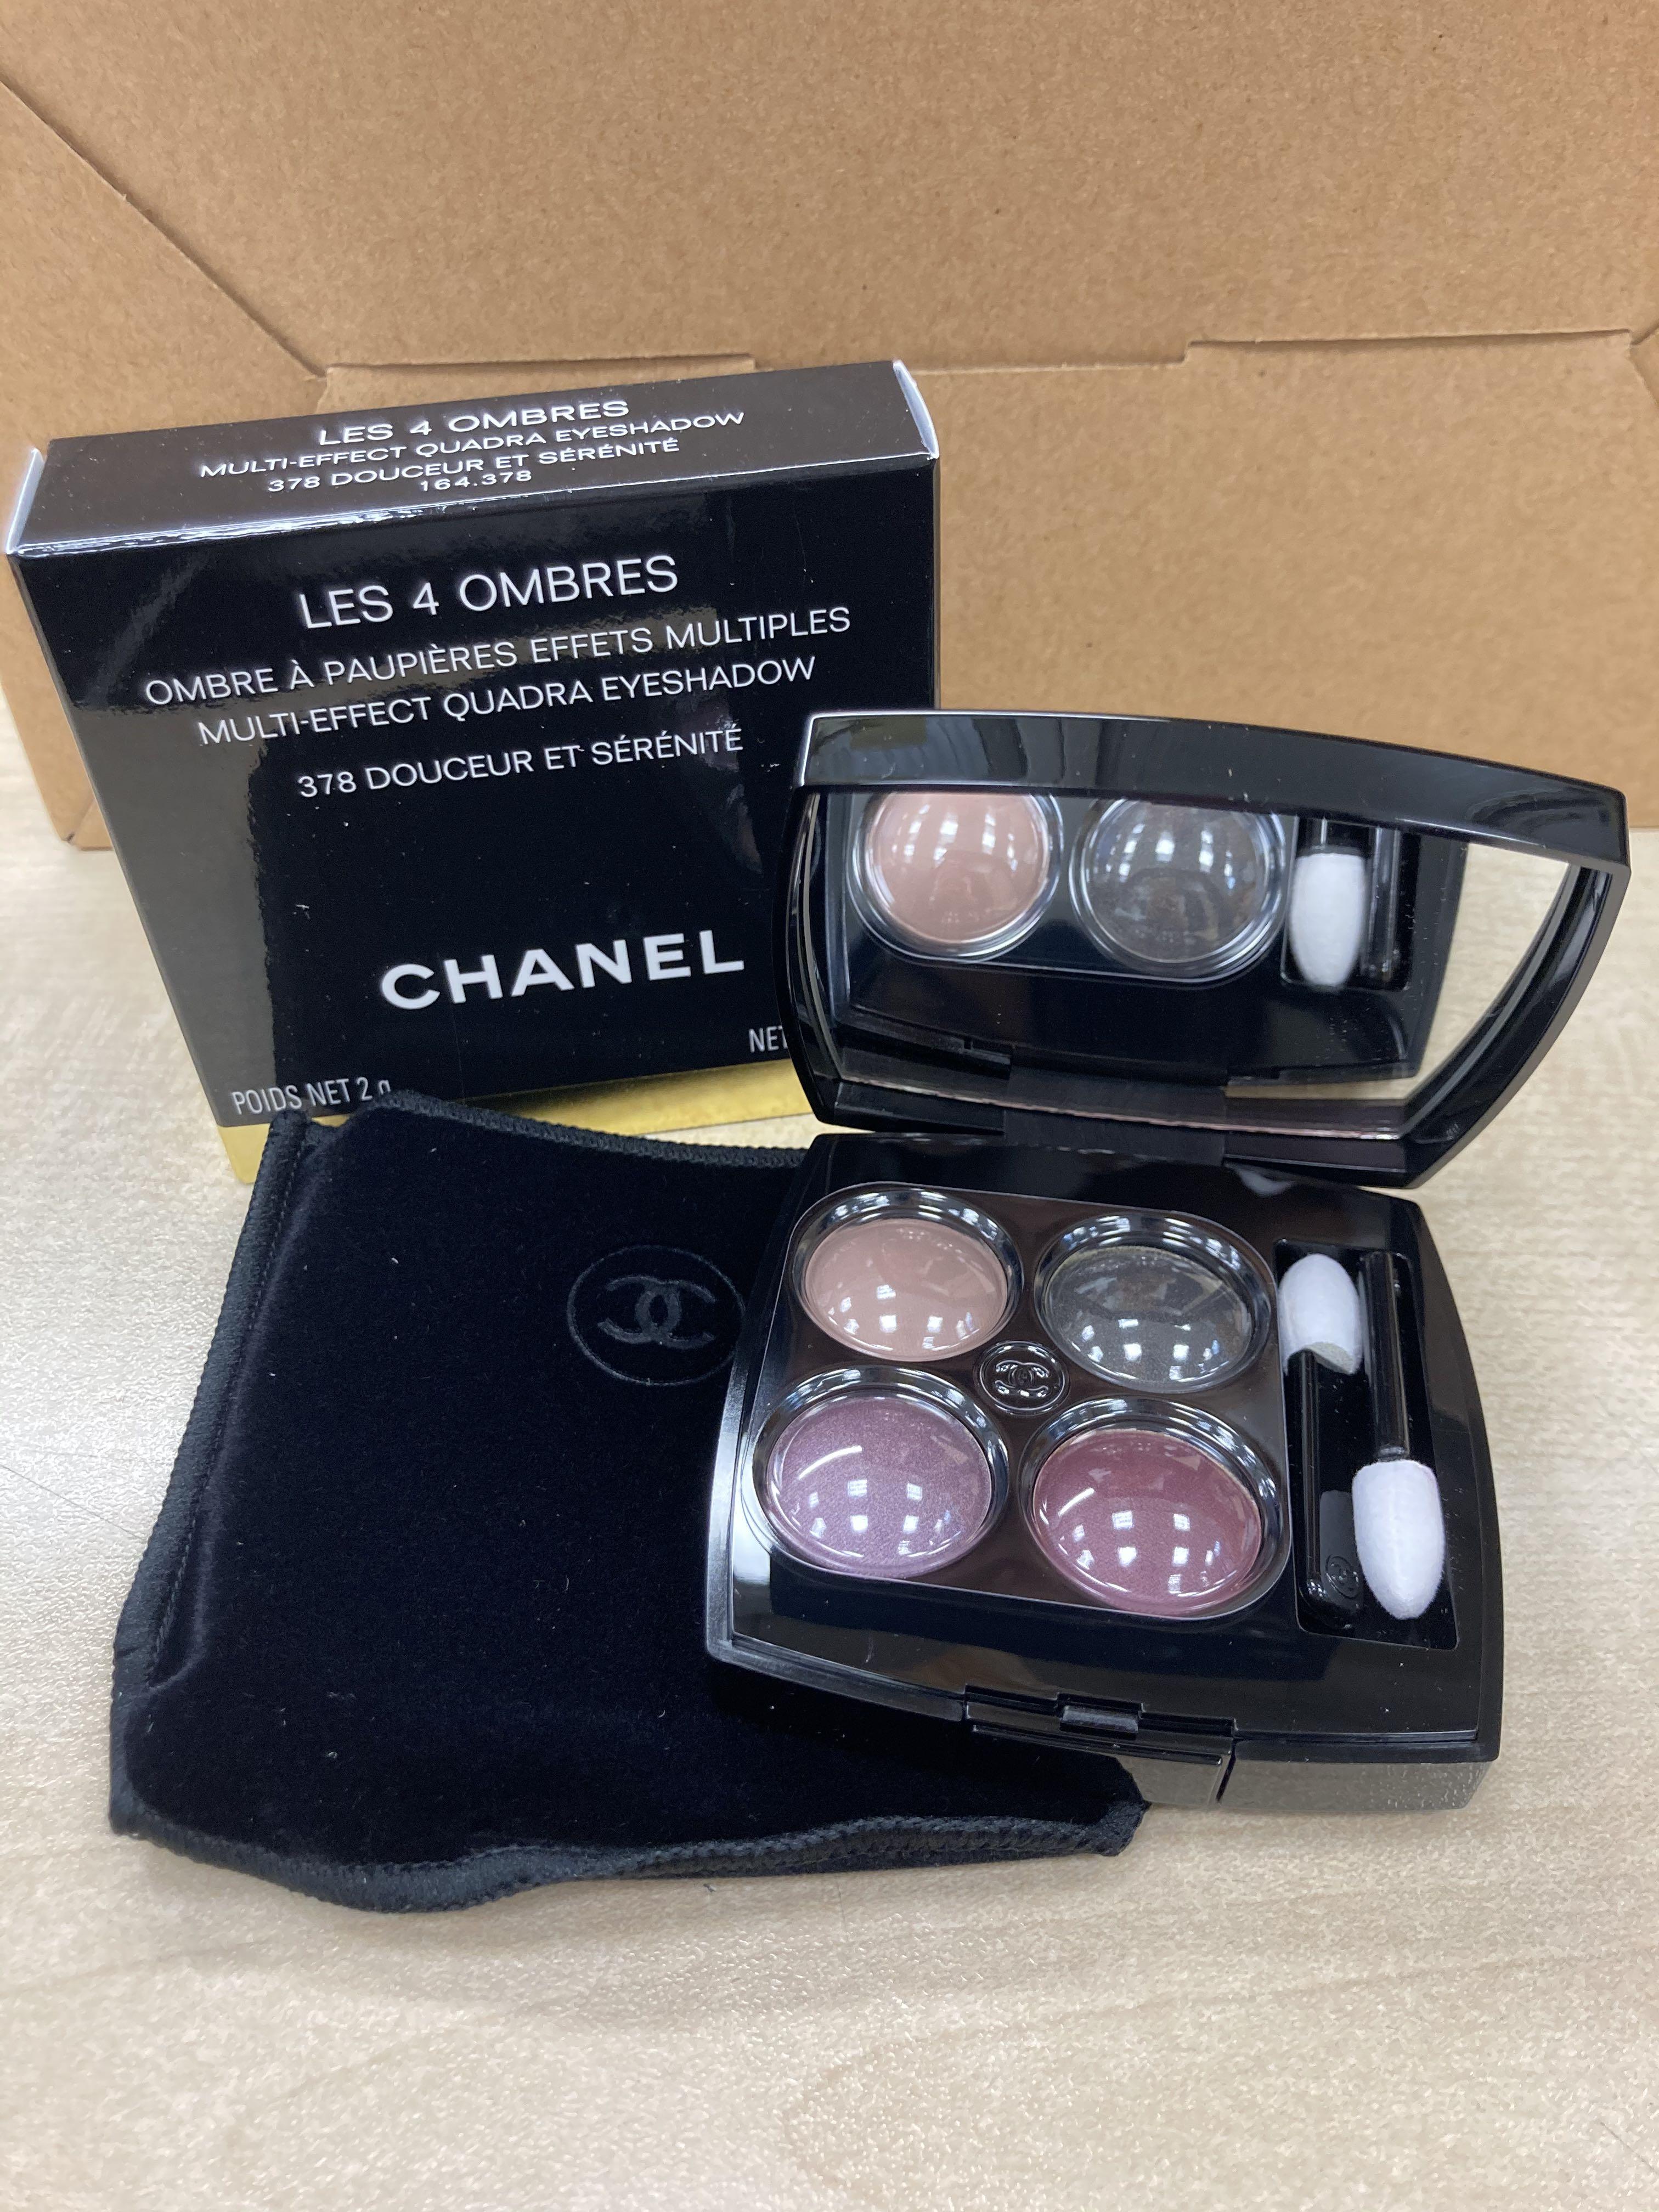 Chanel Douceur et Serenite (378) Les 4 Ombres Multi-Effect Quadra